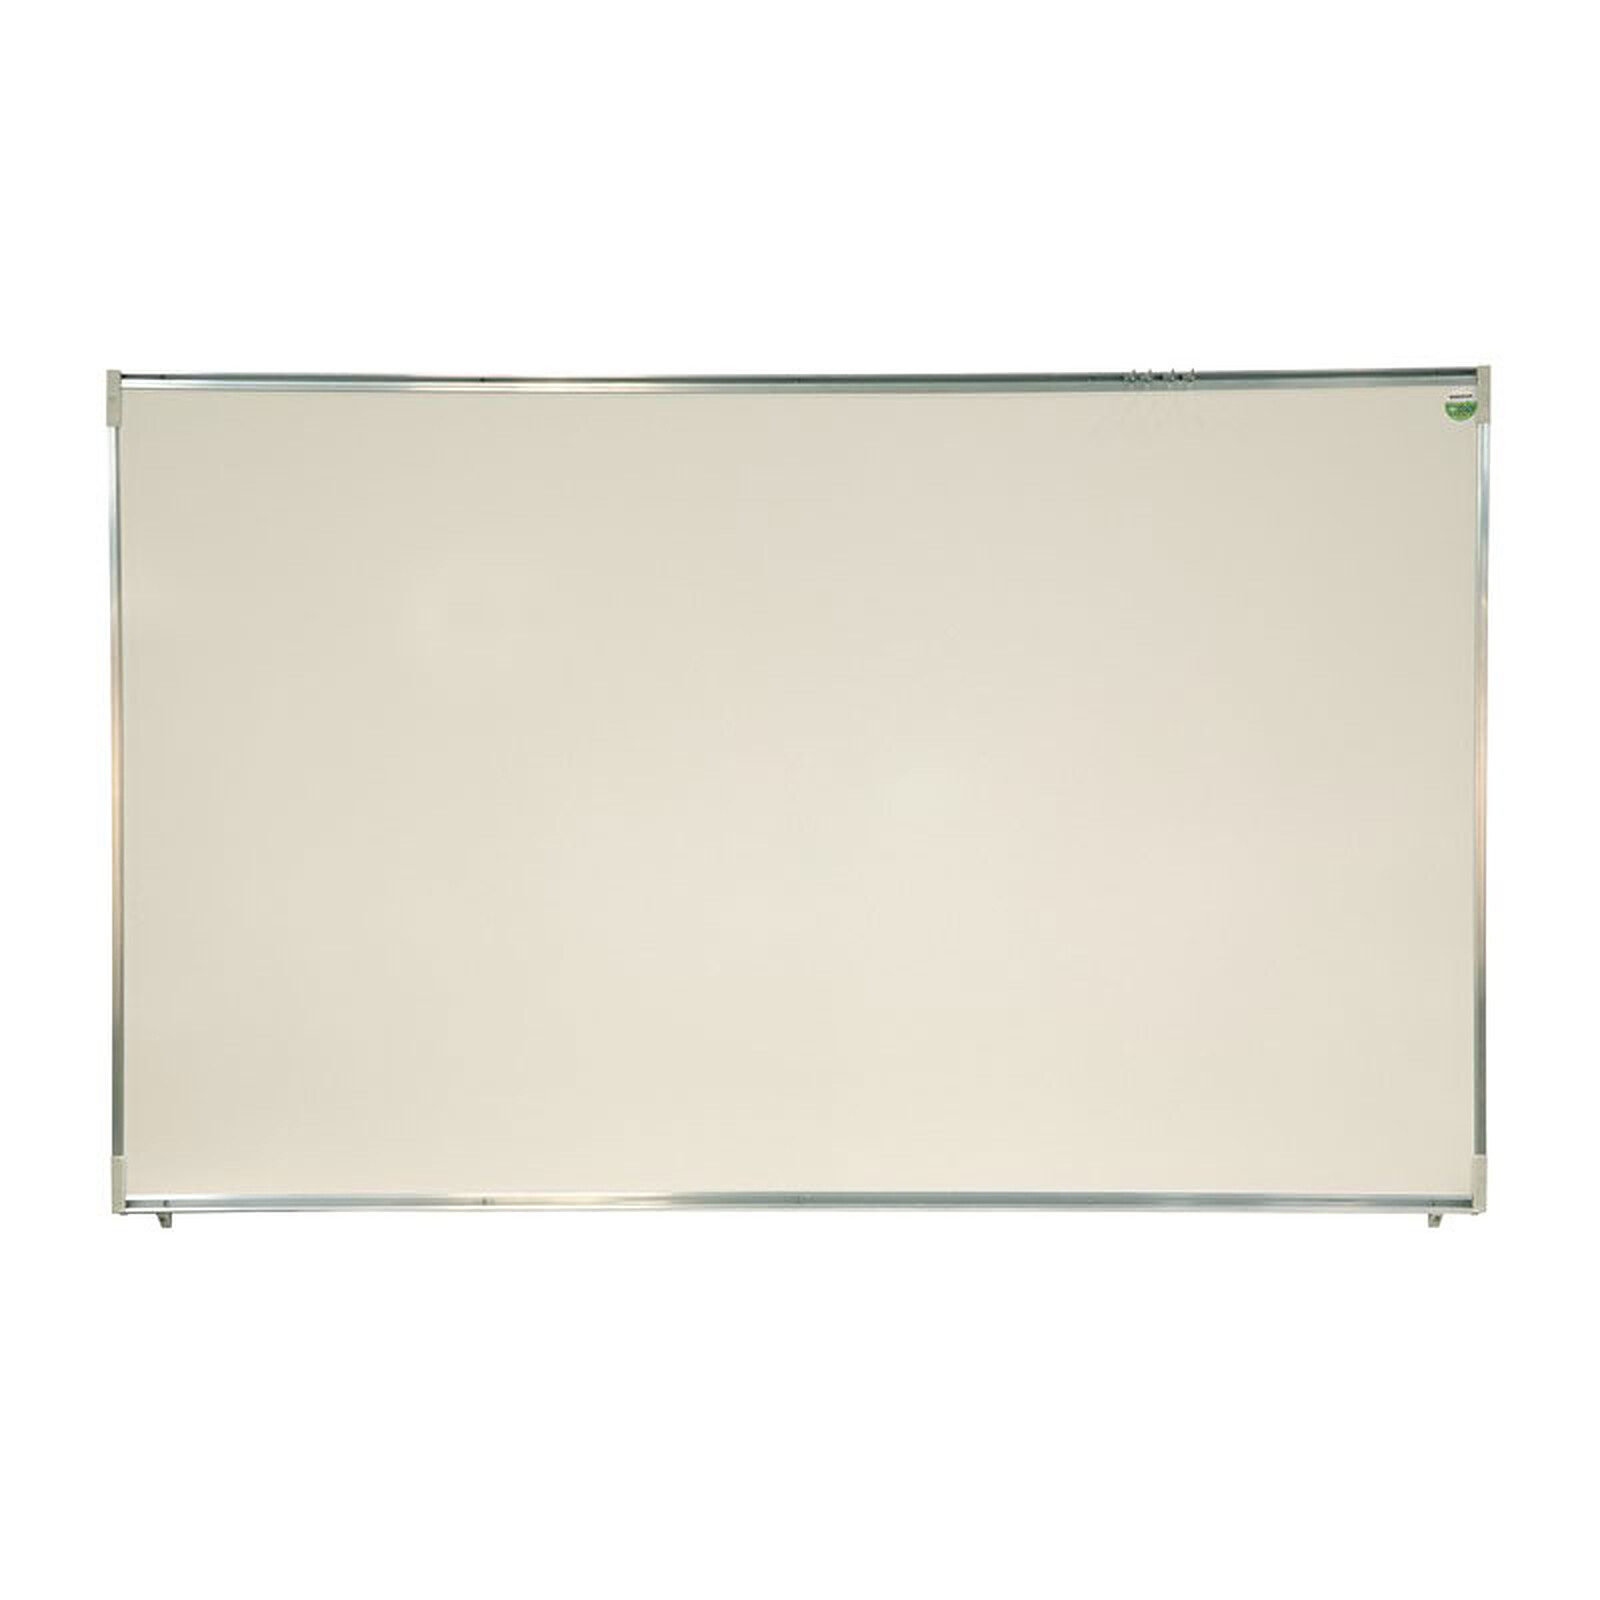 CEP Rocada Tableau magnétique blanc et bois - Tableau blanc et paperboard -  Garantie 3 ans LDLC